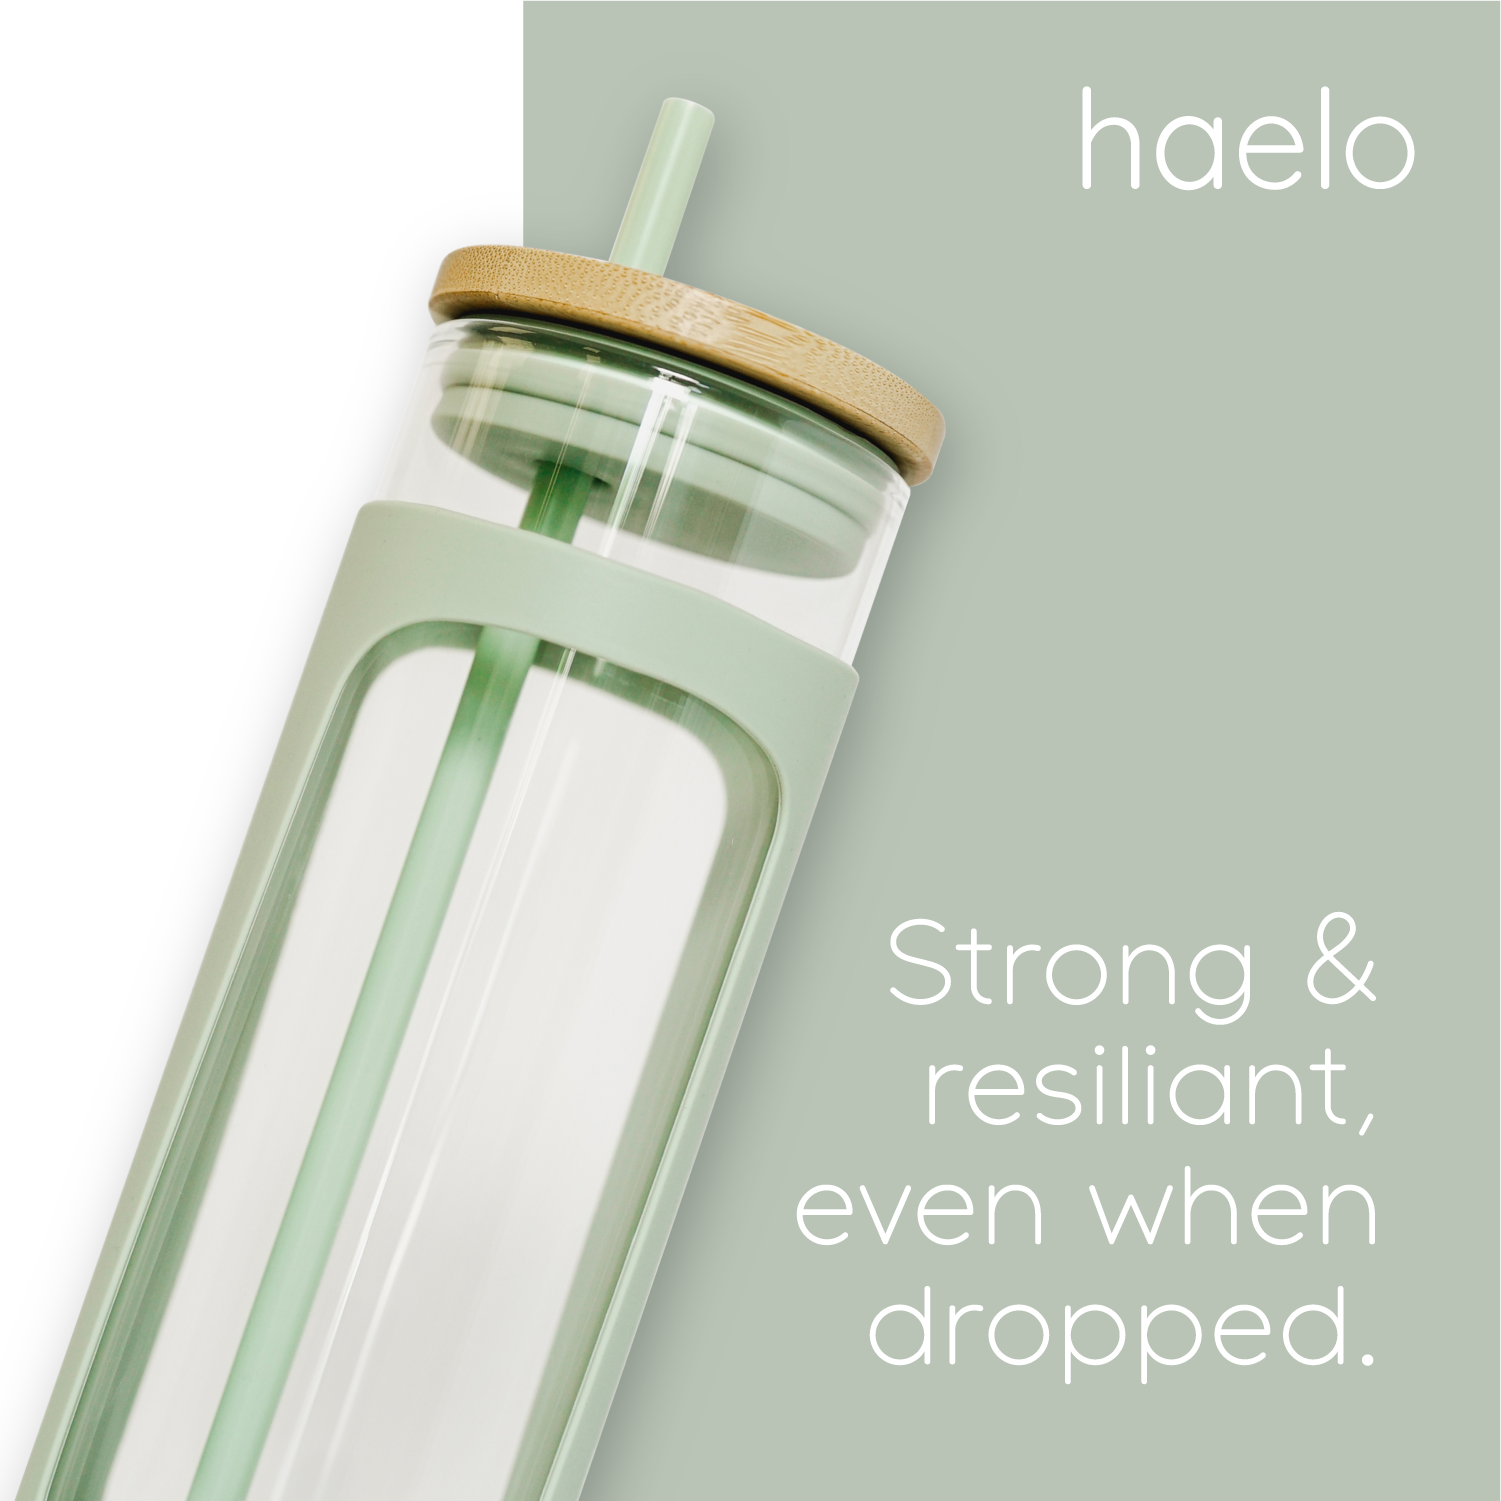 haelo bottle performance